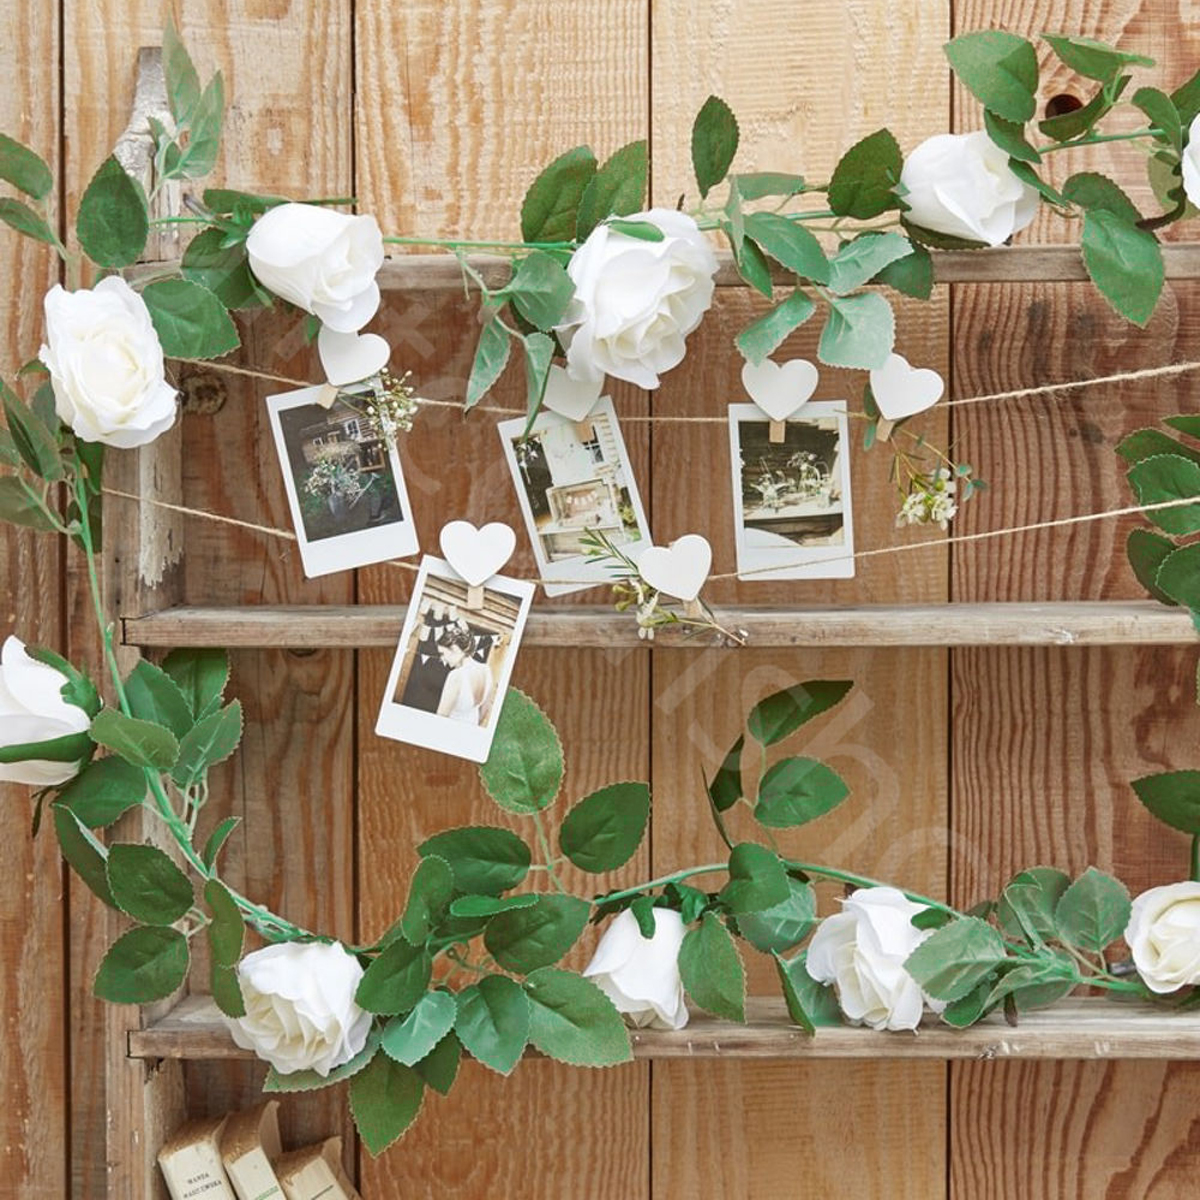 

Искусственный белый цветок роз Висячие Гарланд Свадебное Партия Сад Украшения 2m